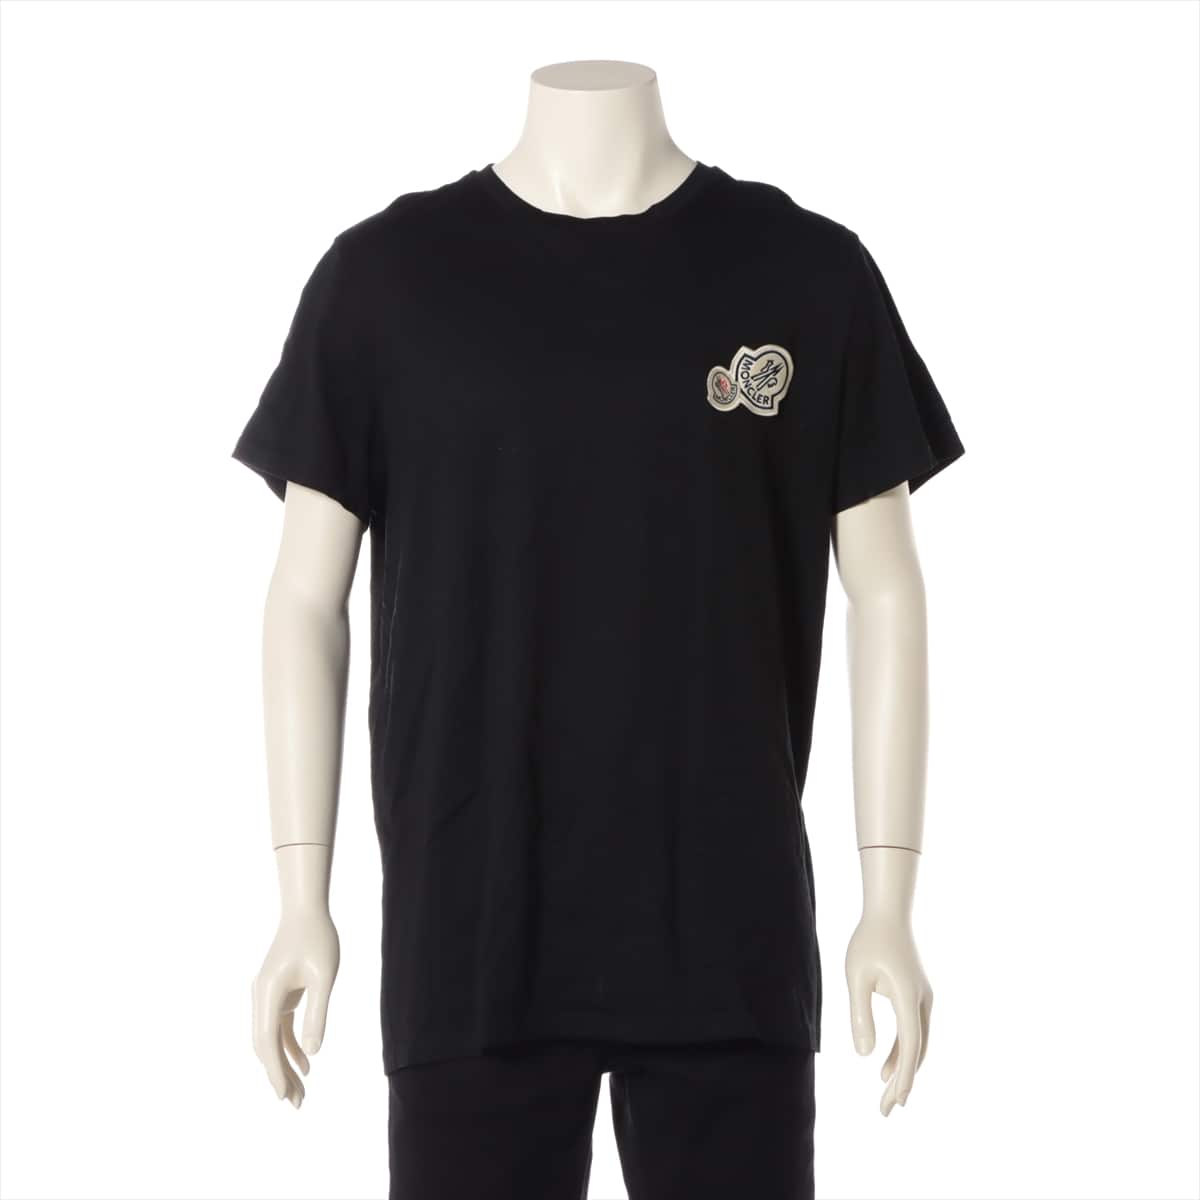 Moncler 21 years Cotton T-shirt XL Men's Black  H10918C00057 Patches